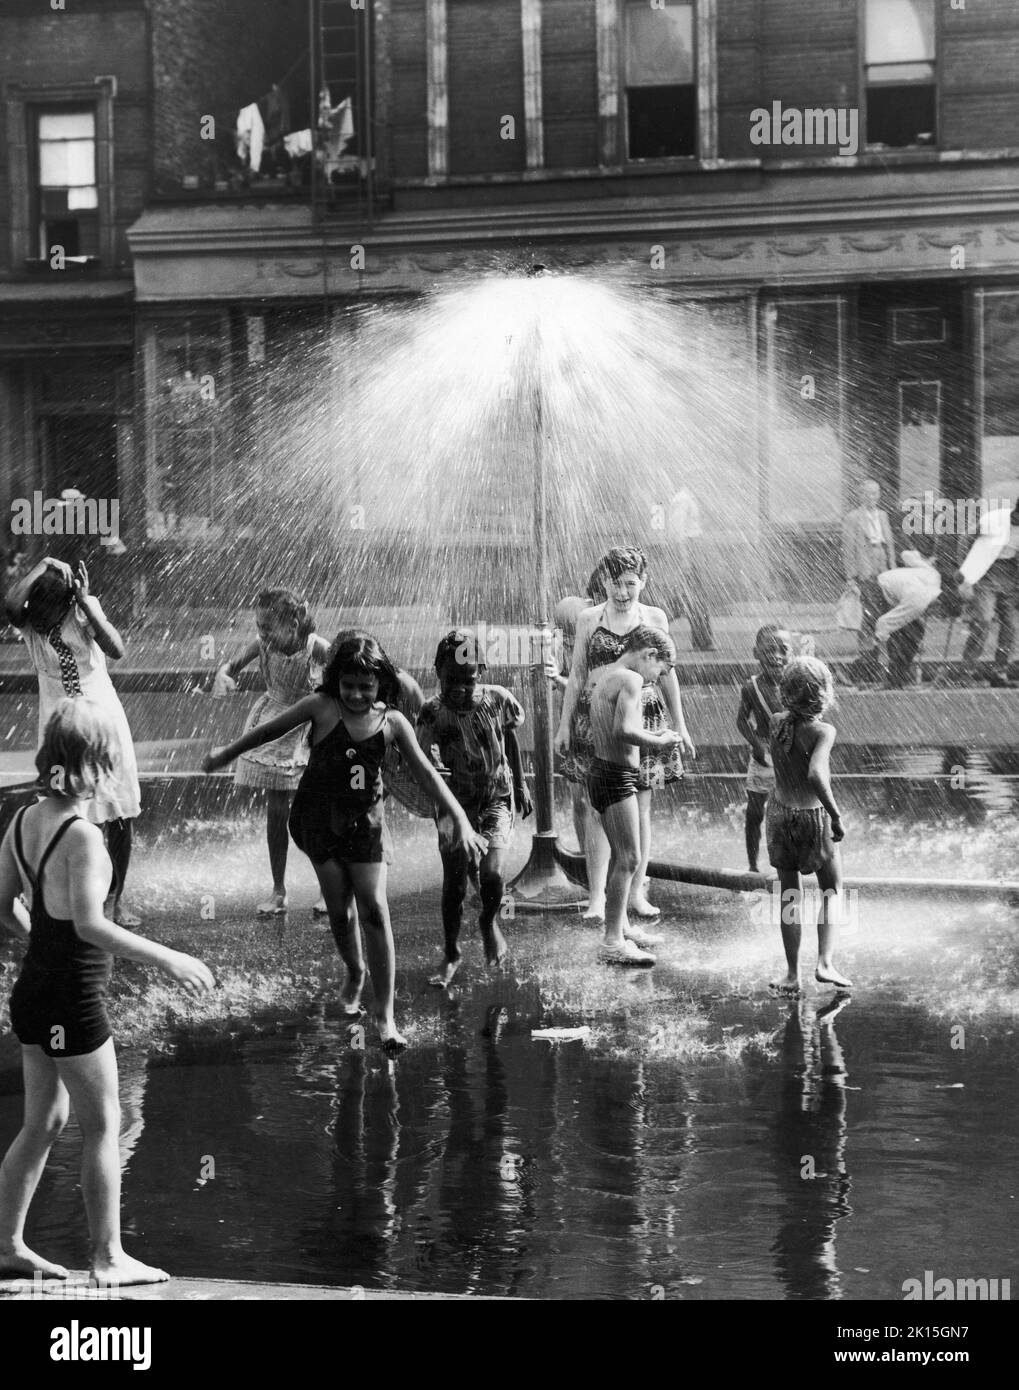 Les enfants se refroidissent sous une arroseur urbain dans la ville de New York, 1954. Banque D'Images